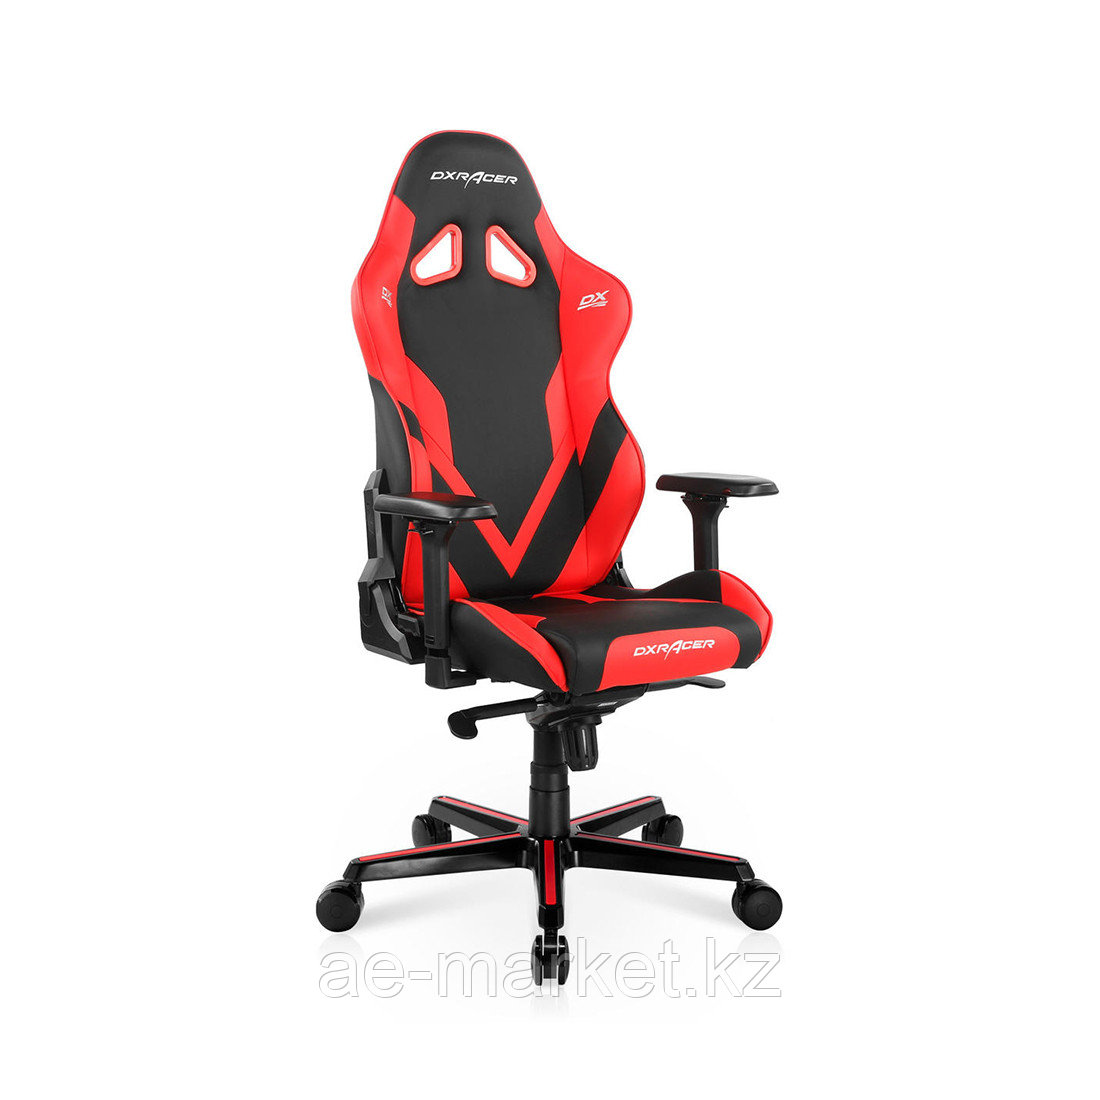 Игровое компьютерное кресло DX Racer GC/G001/NR-D2, фото 1